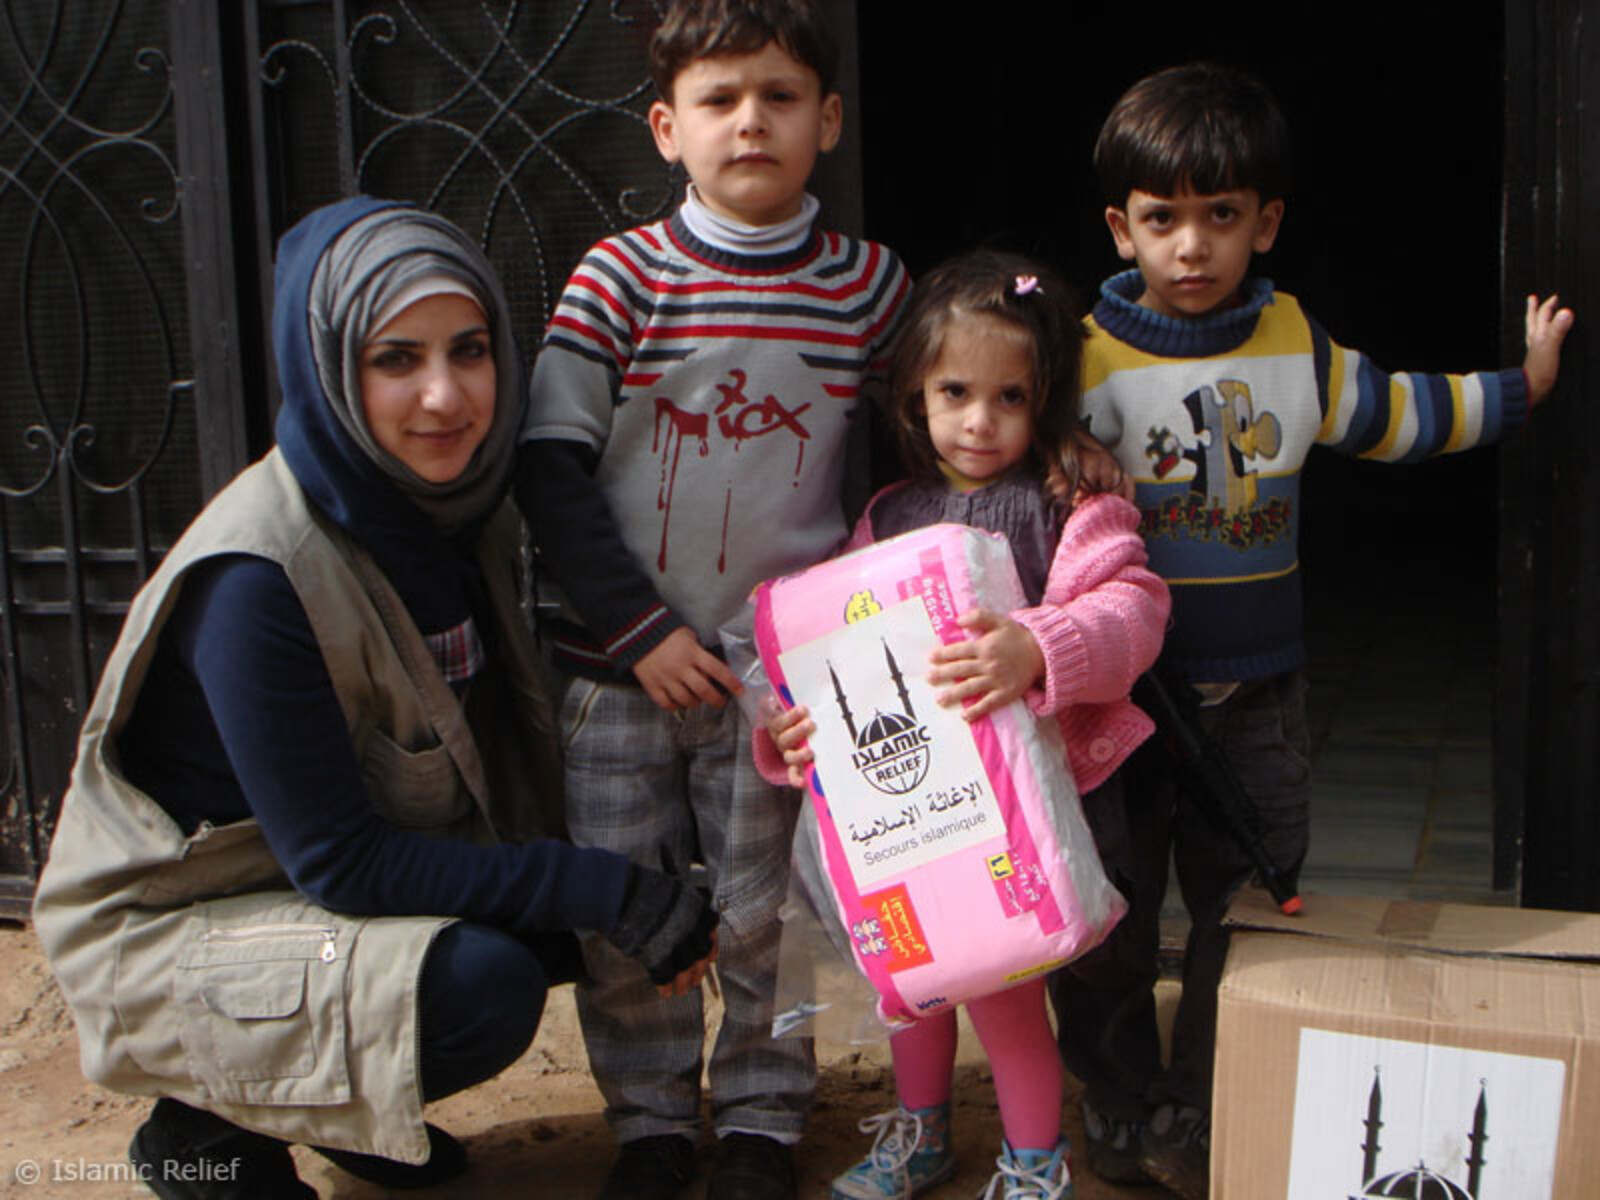 Mehrere unserer Bündnispartner wie Islamic Relief, die Malteser und CARE verteilen Hilfsgüter an syrische Flüchtlinge in den Nachbarländern.